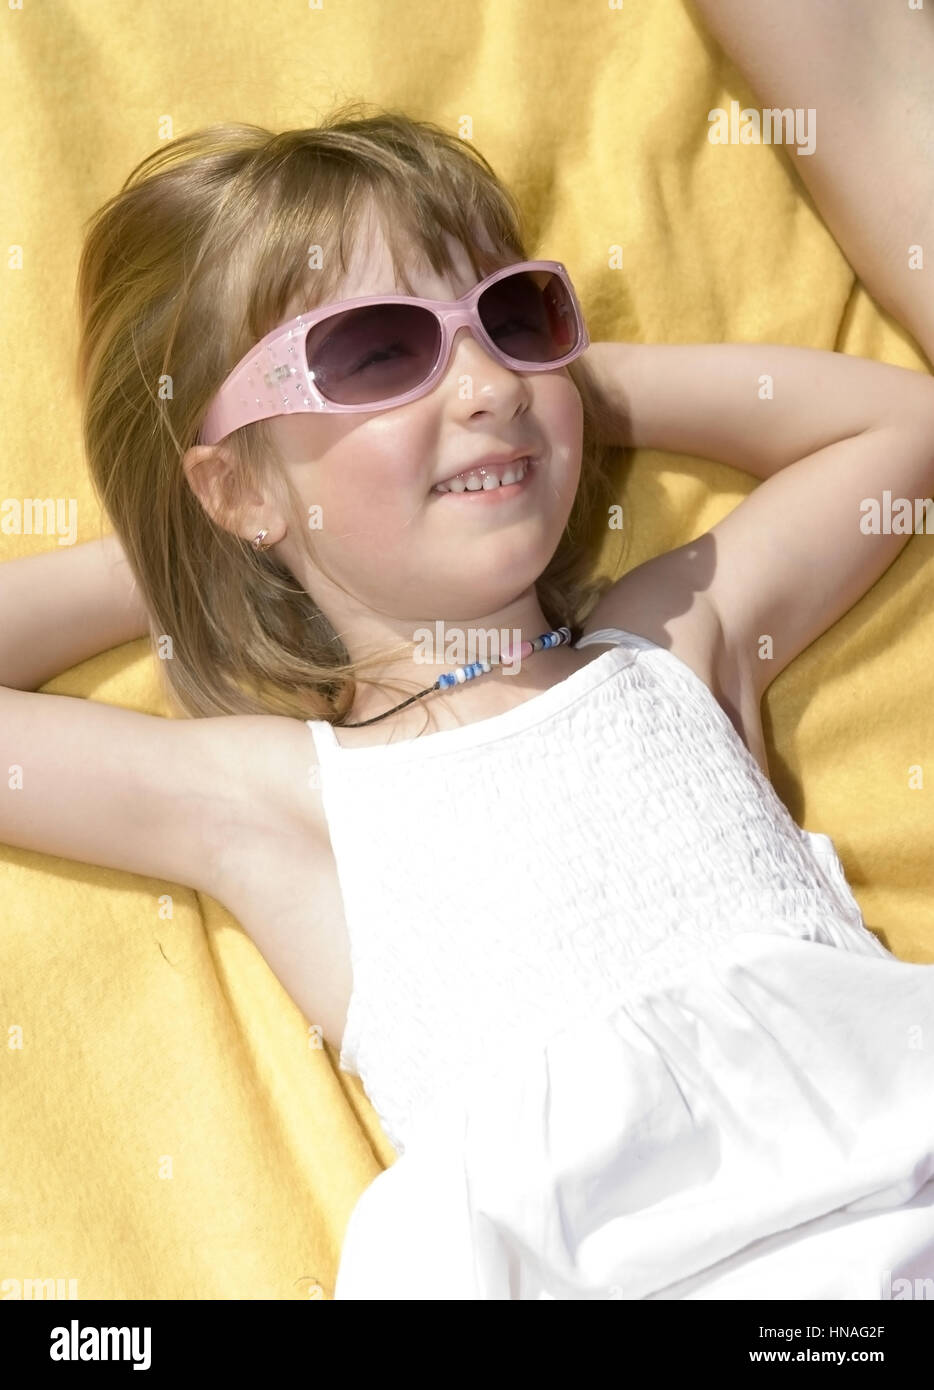 Maedchen mit Sonnebrille - ragazza con occhiali da sole Foto Stock